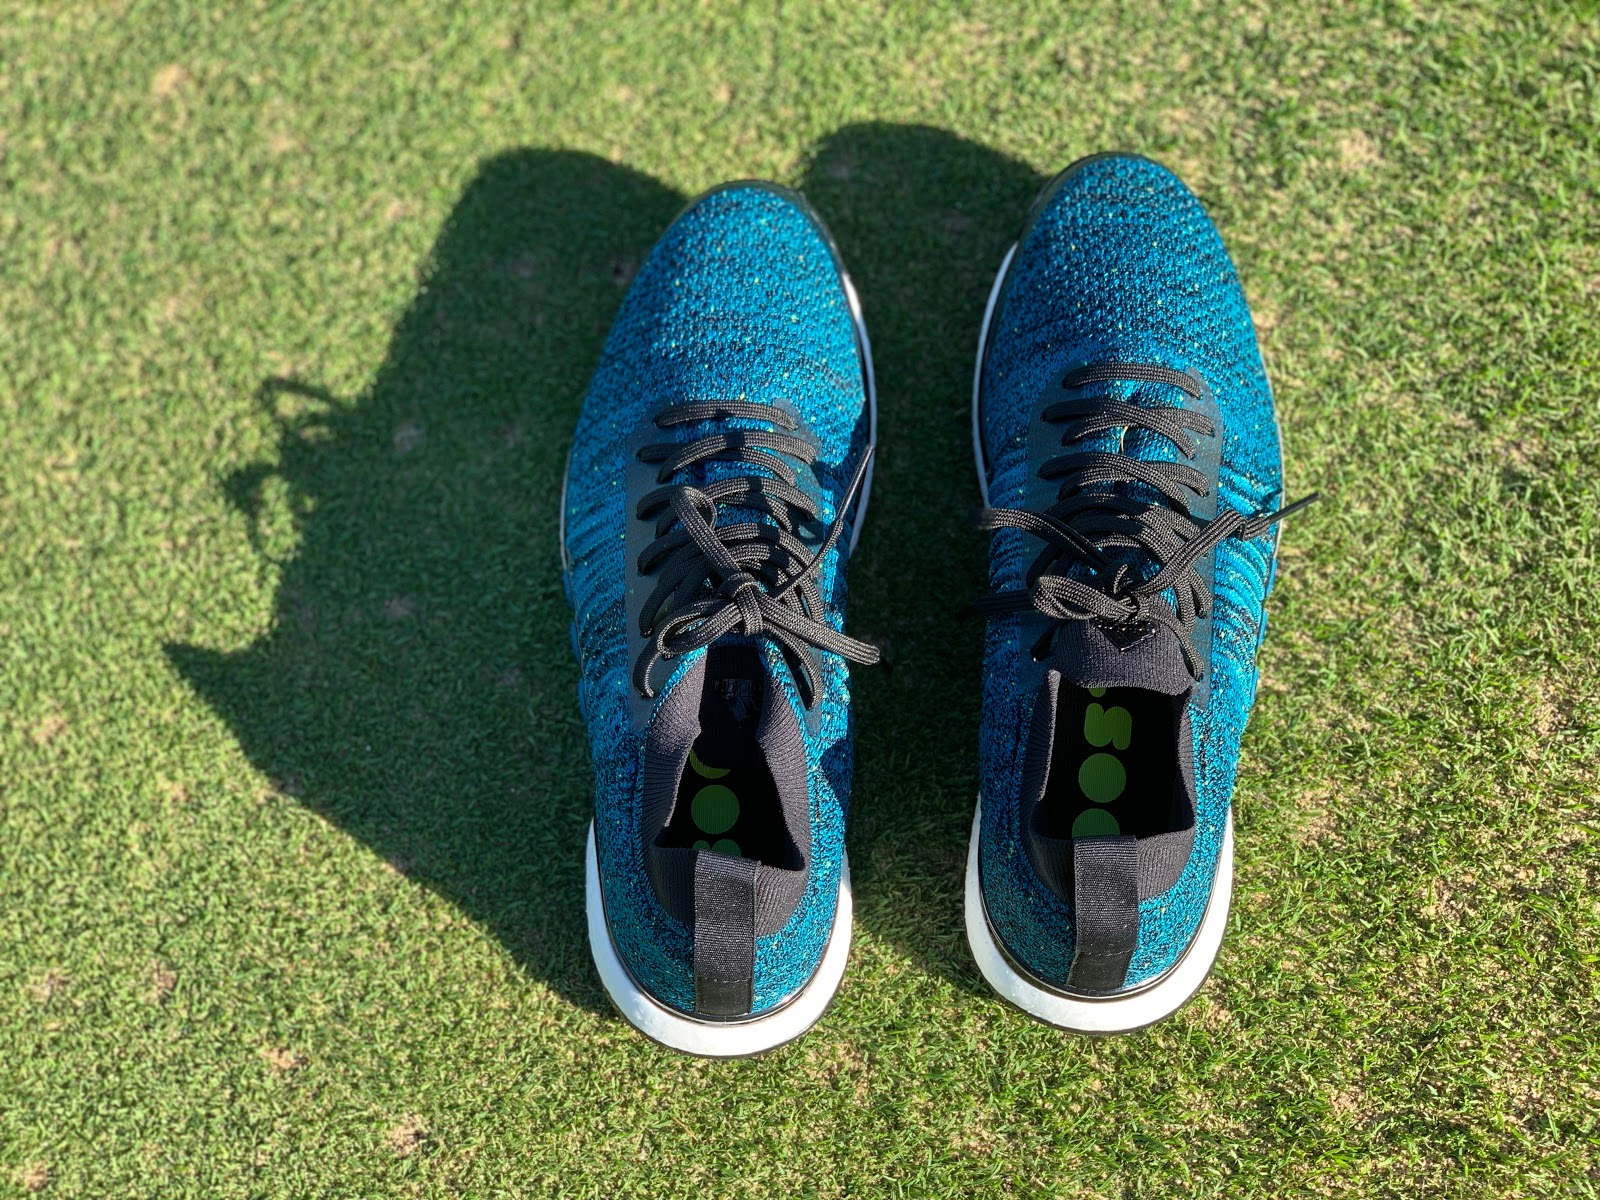 adidas men's tour360 xt primeknit golf shoes